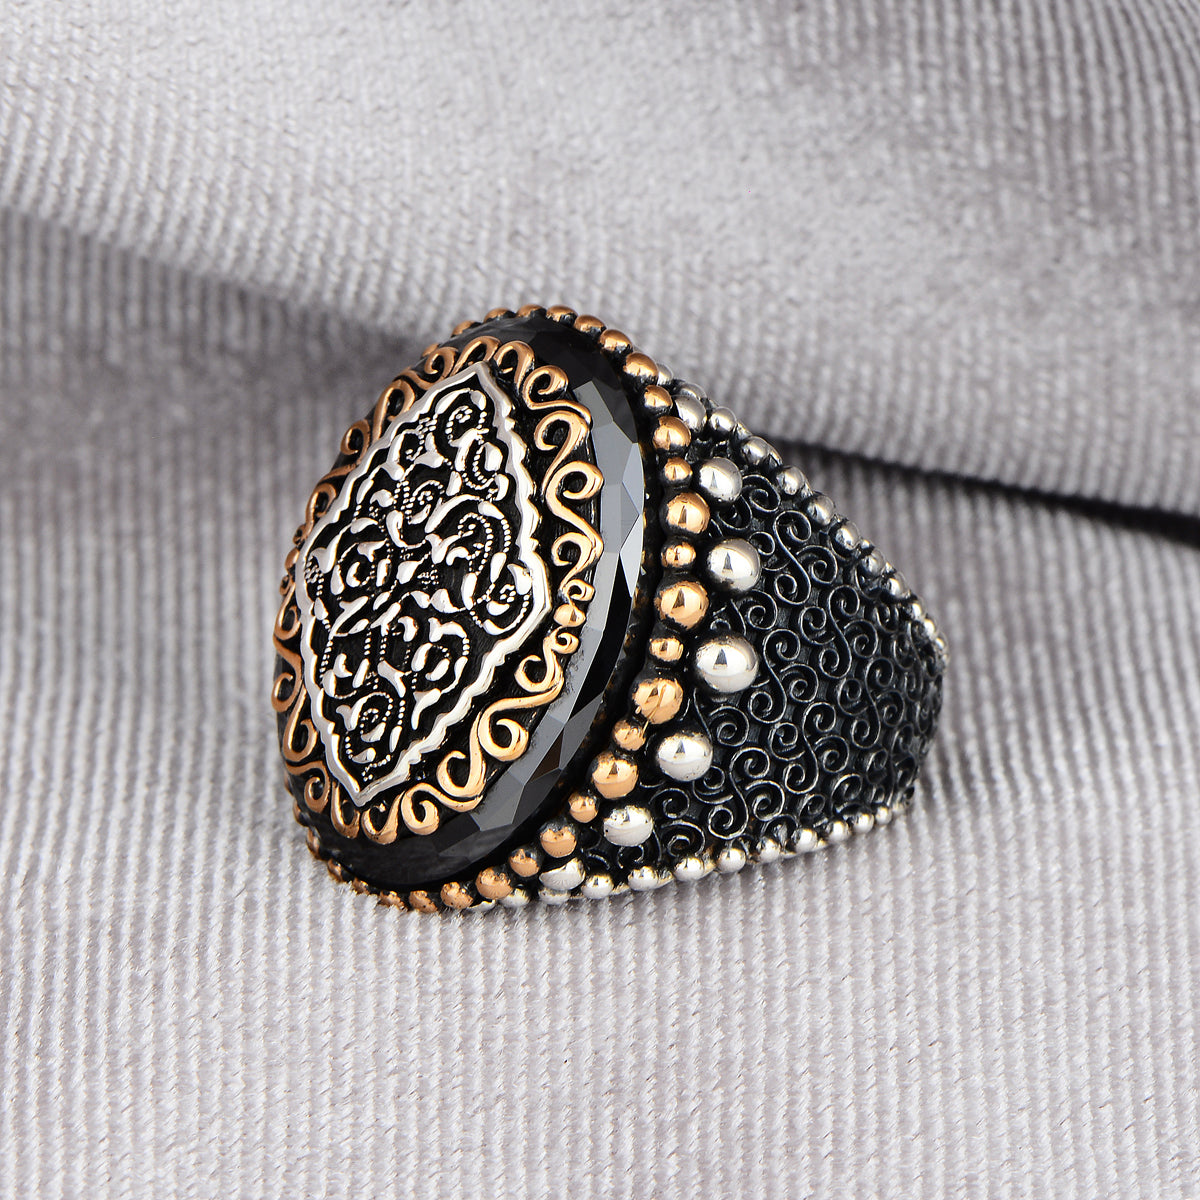 Silberner Ring mit schwarzem Zirkonstein im osmanischen Stil